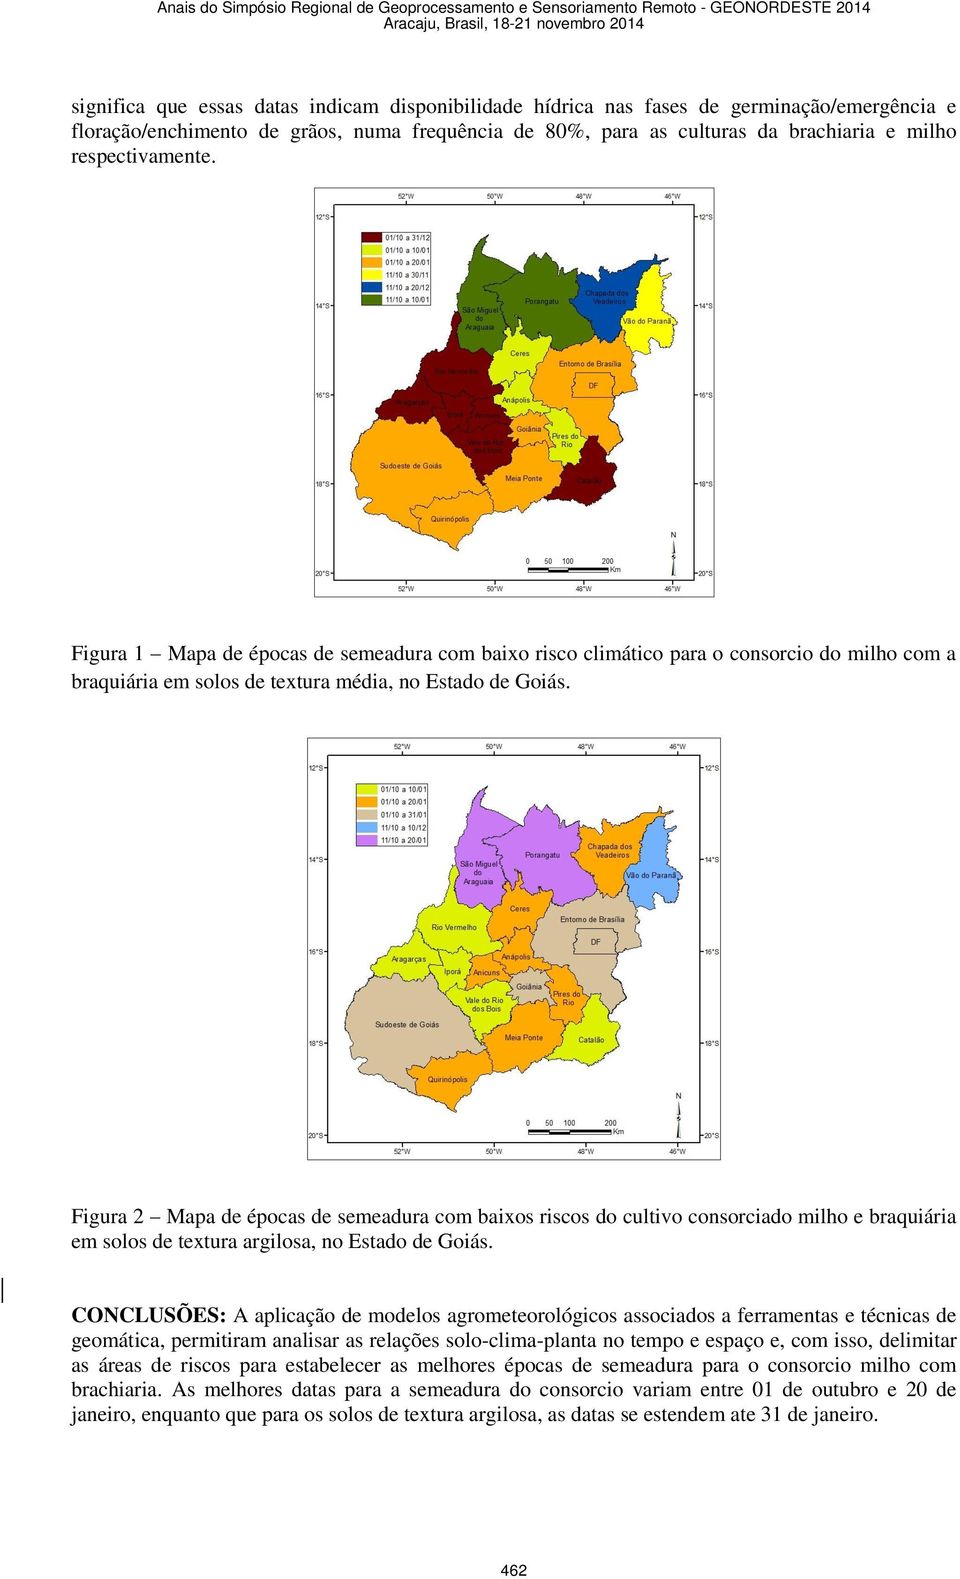 Figura 2 Mapa de épocas de semeadura com baixos riscos do cultivo consorciado milho e braquiária em solos de textura argilosa, no Estado de Goiás.